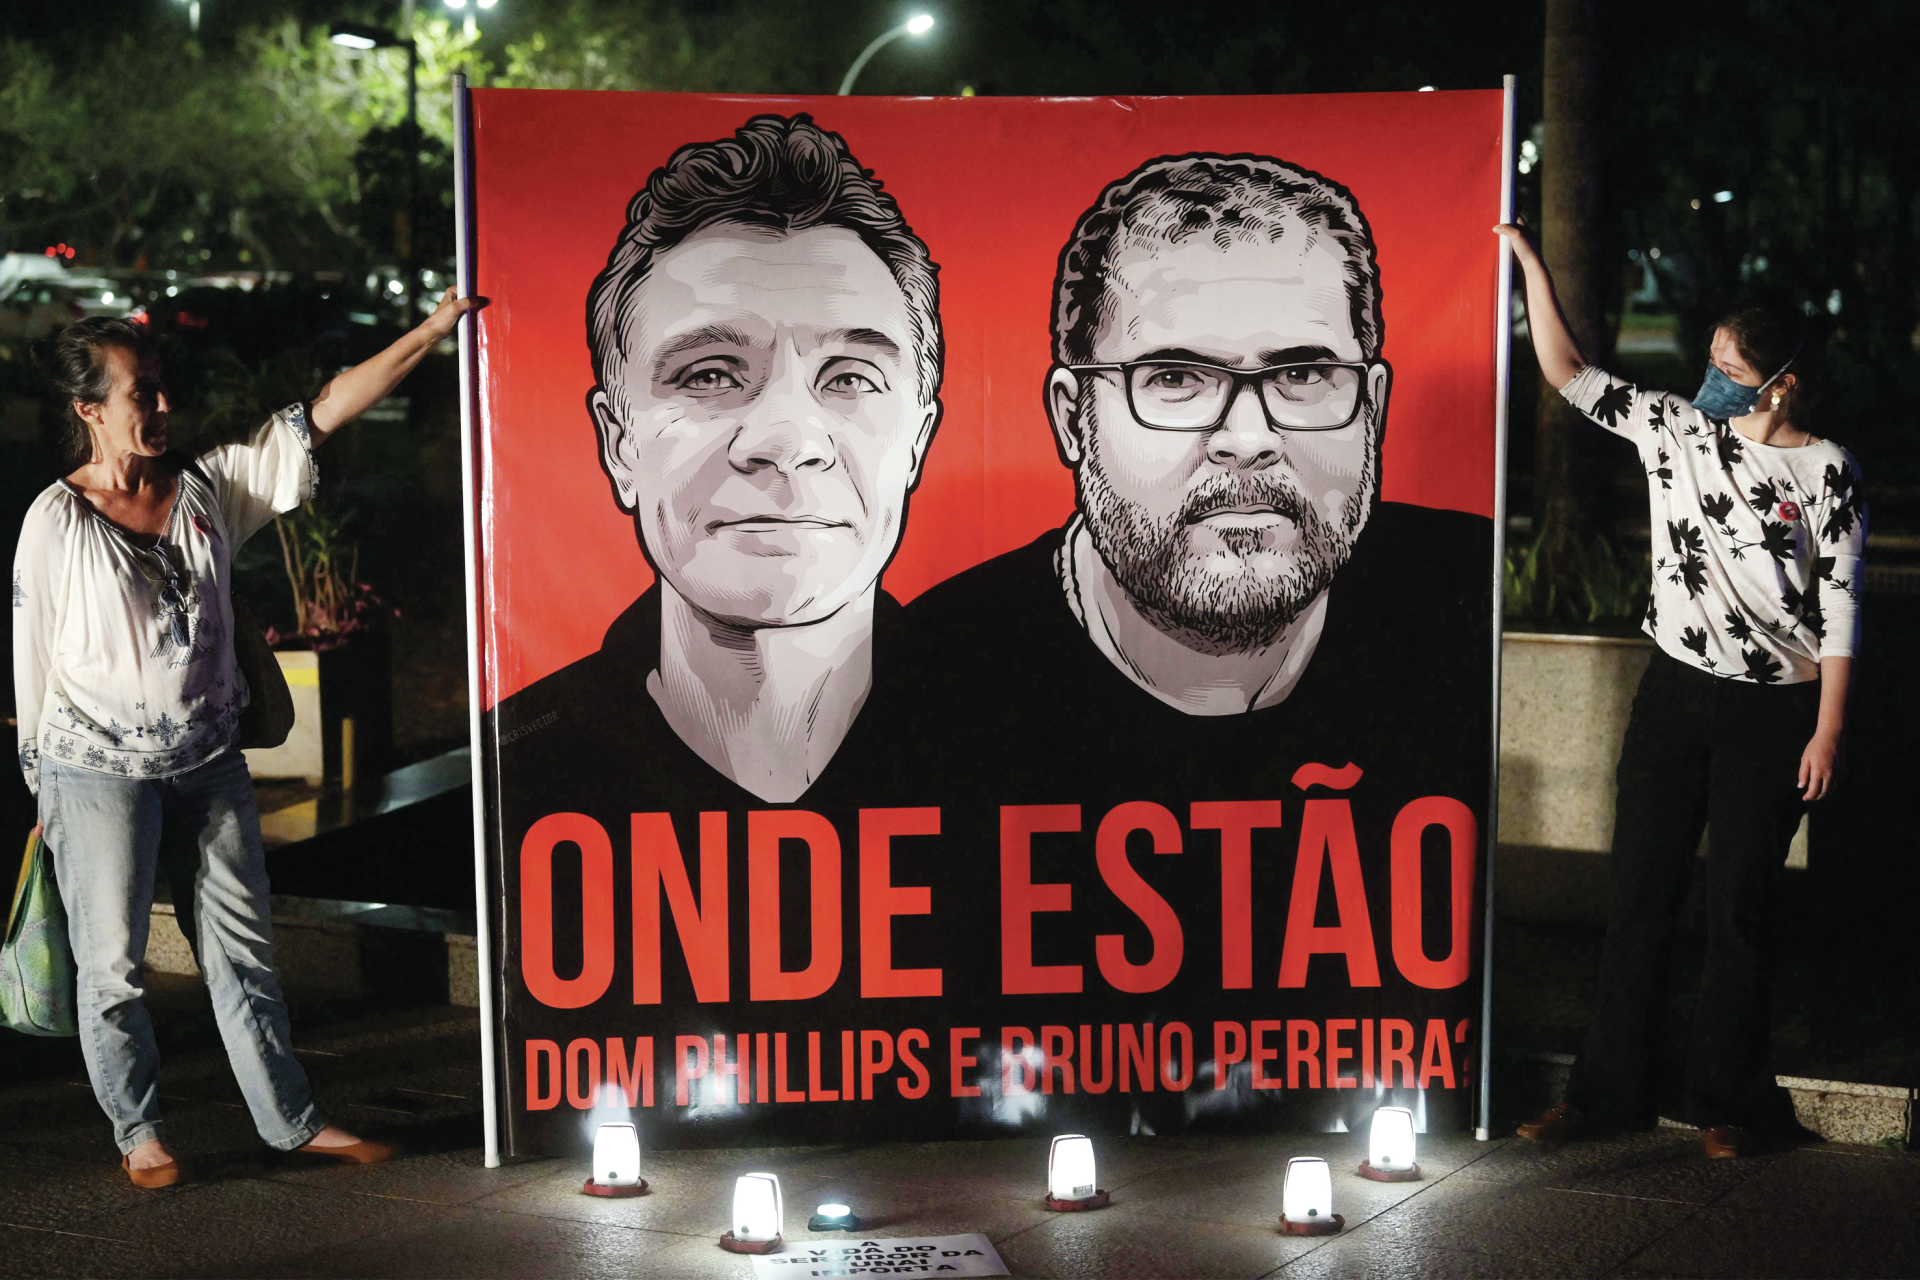 O estranho caso do jornalista e do especialista desaparecidos no Brasil